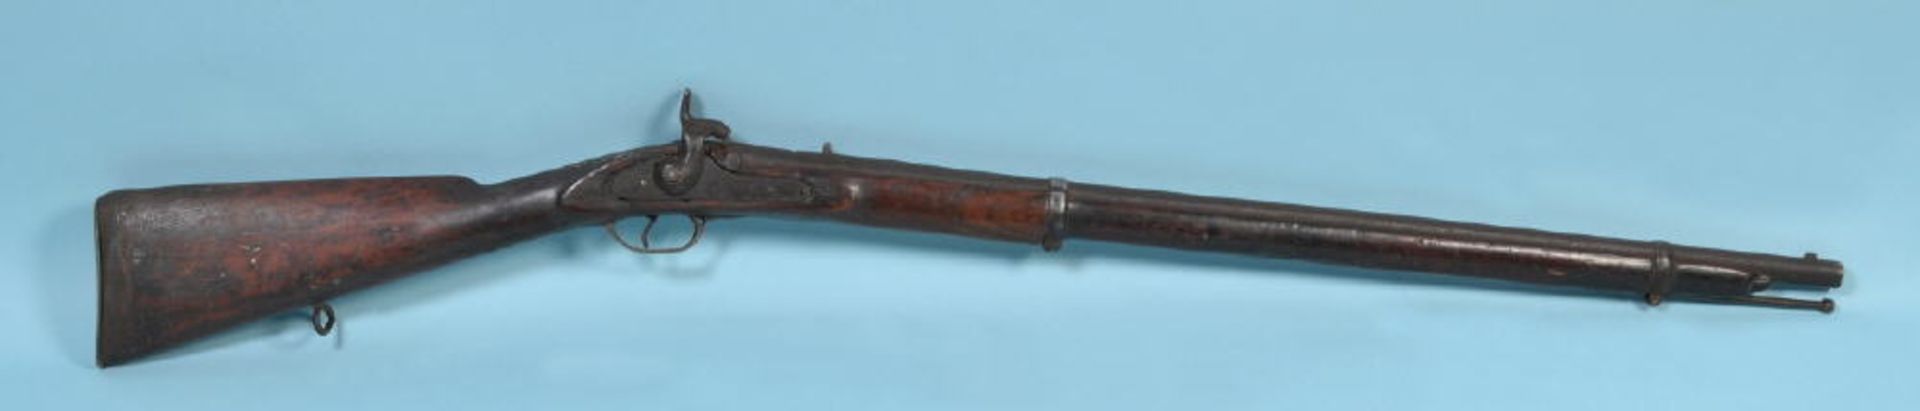 PercussionsgewehrSchaft Nussbaum, Messingmontierungen, runder Stahllauf, L= 122 cm, militärisch, 19.